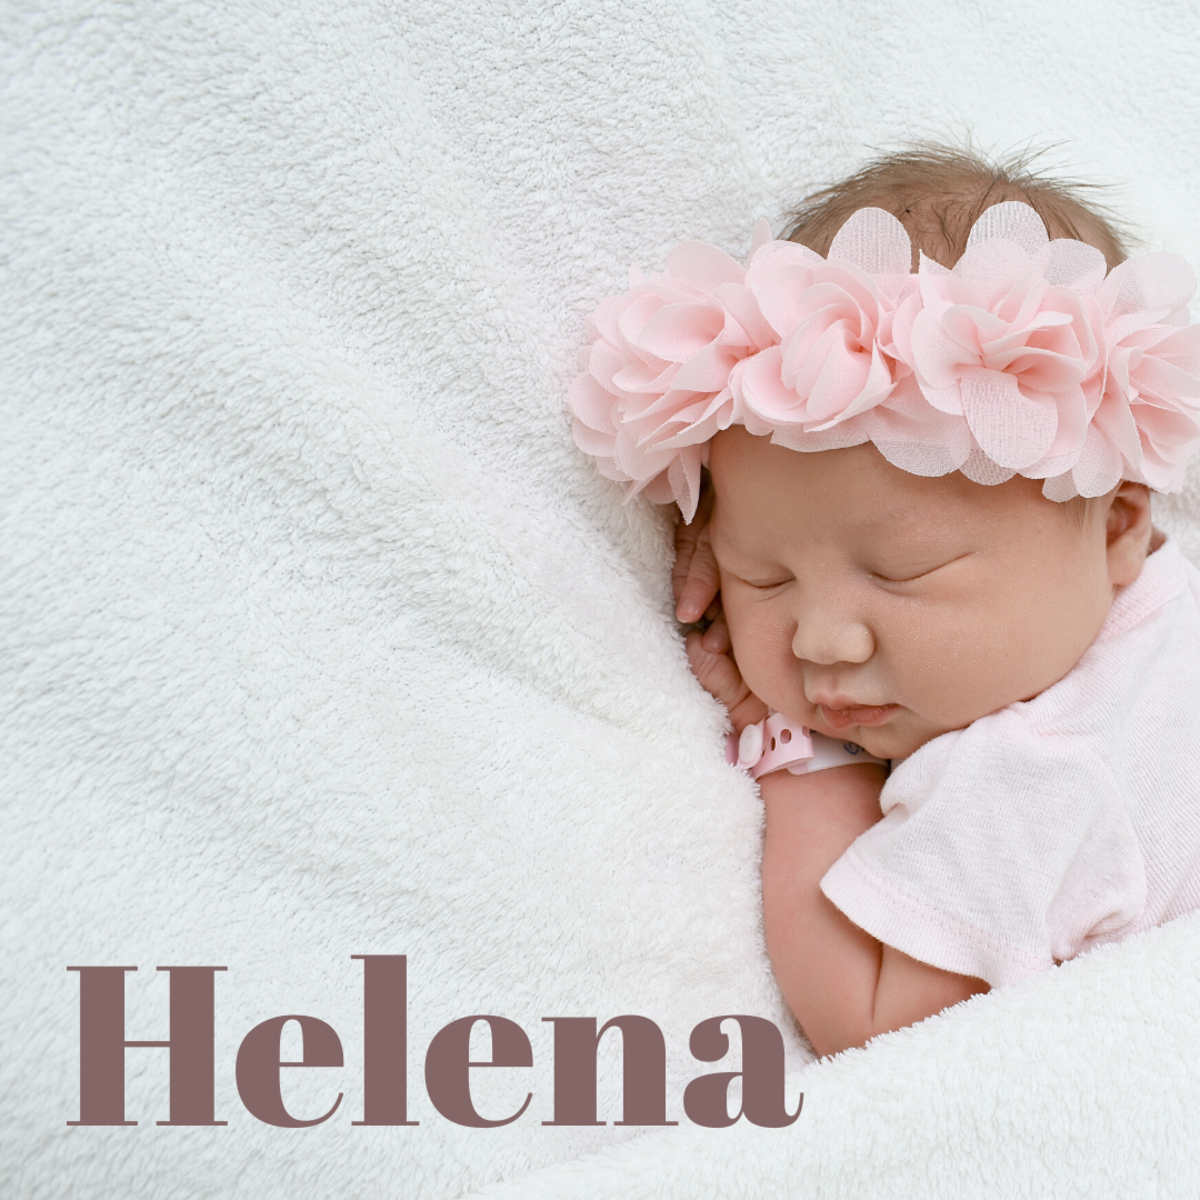 Baby Helena